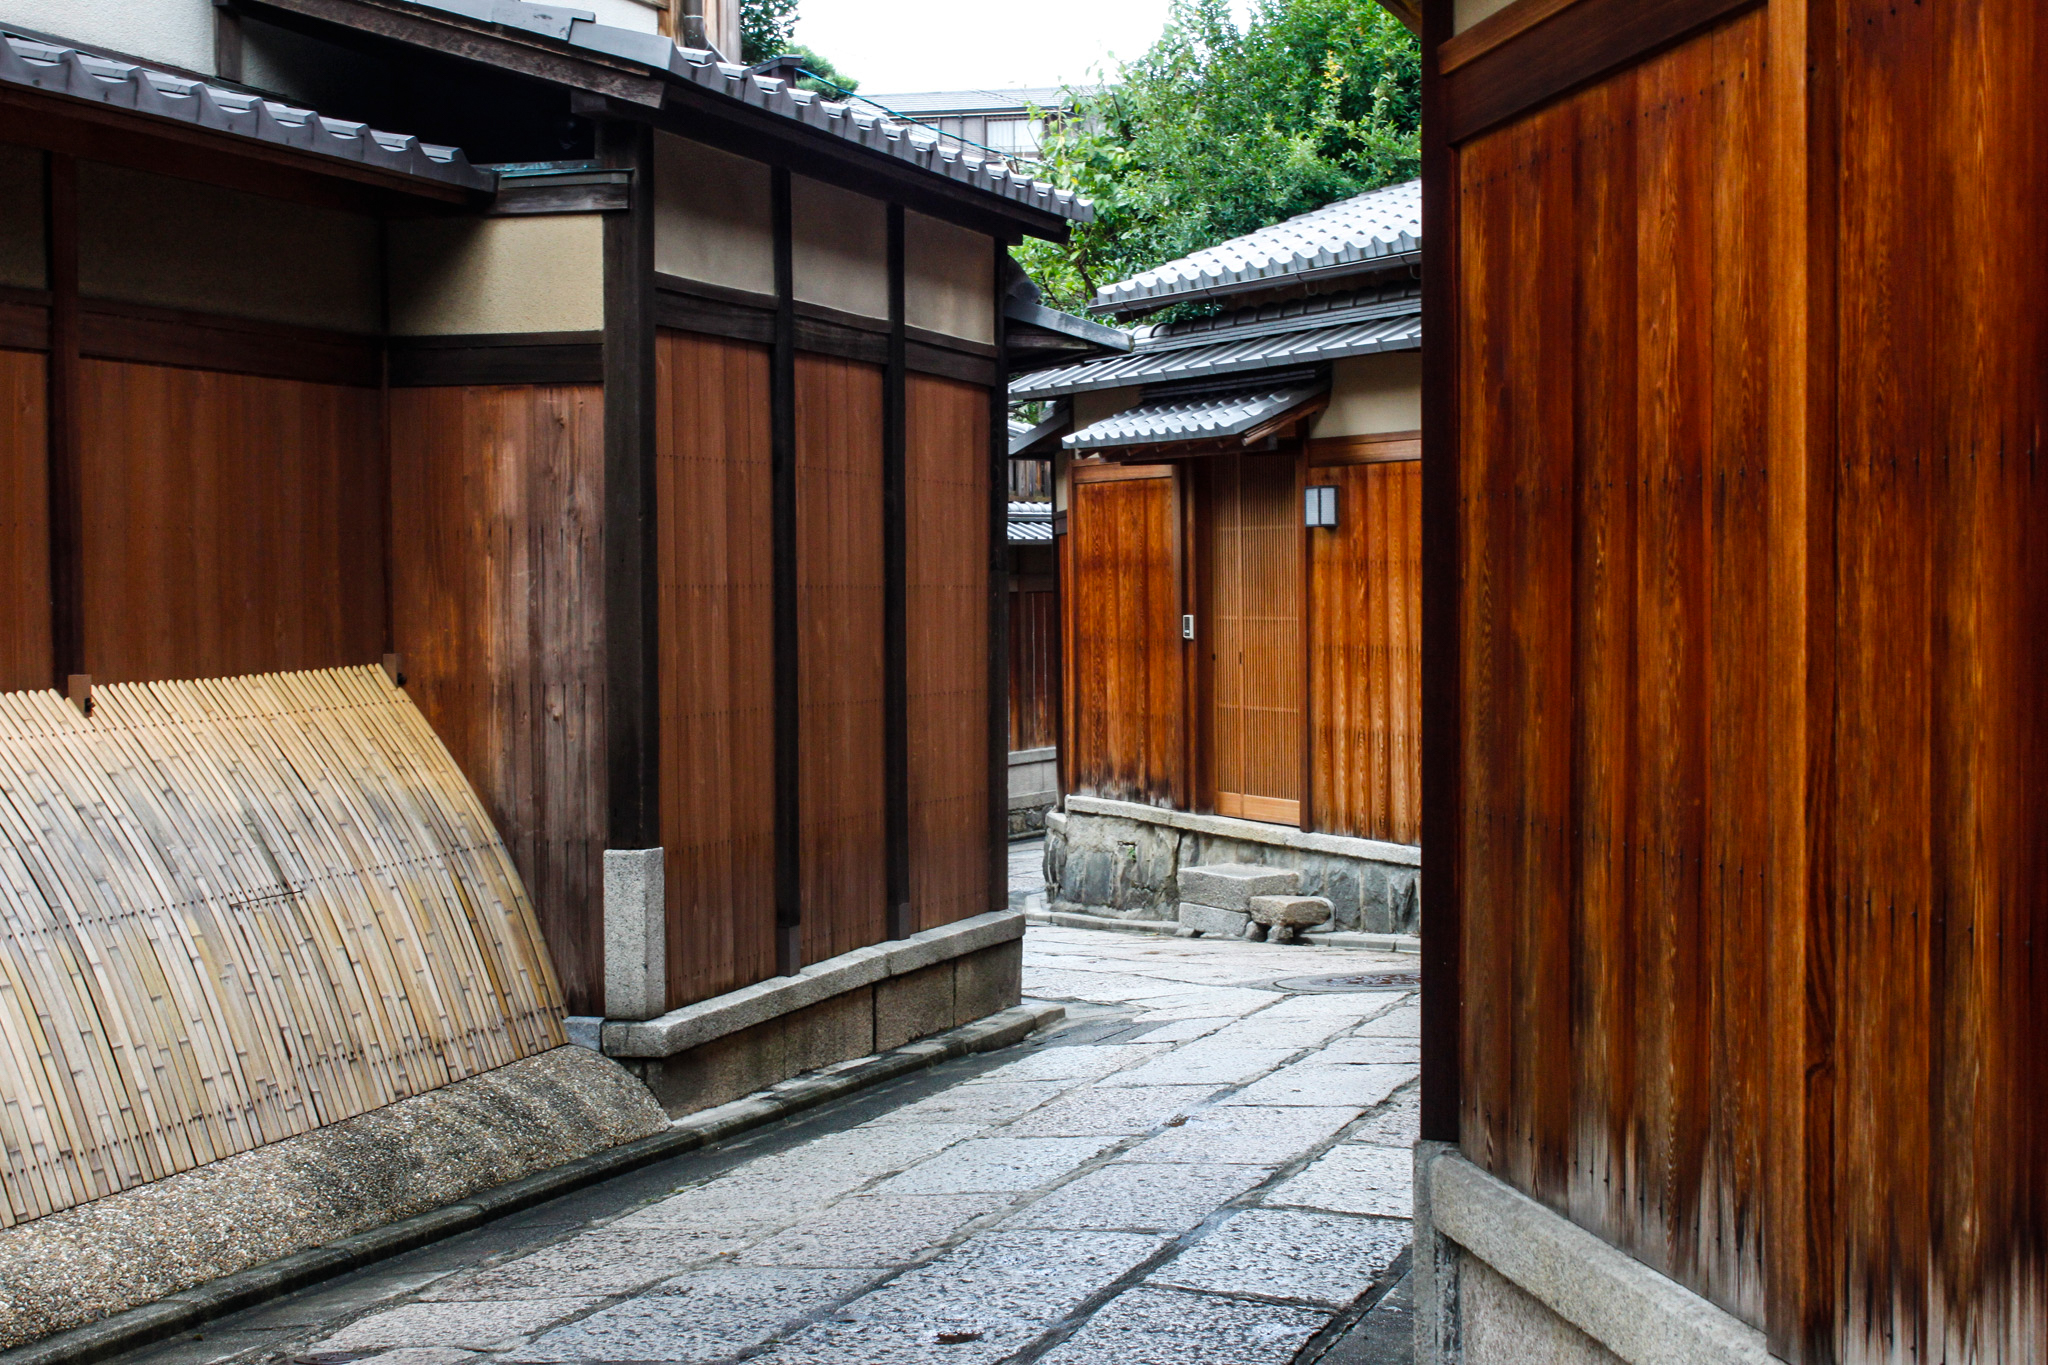 京都の街並み 石畳の路地 フリー 無料 写真素材 ダウンロード Blue Green